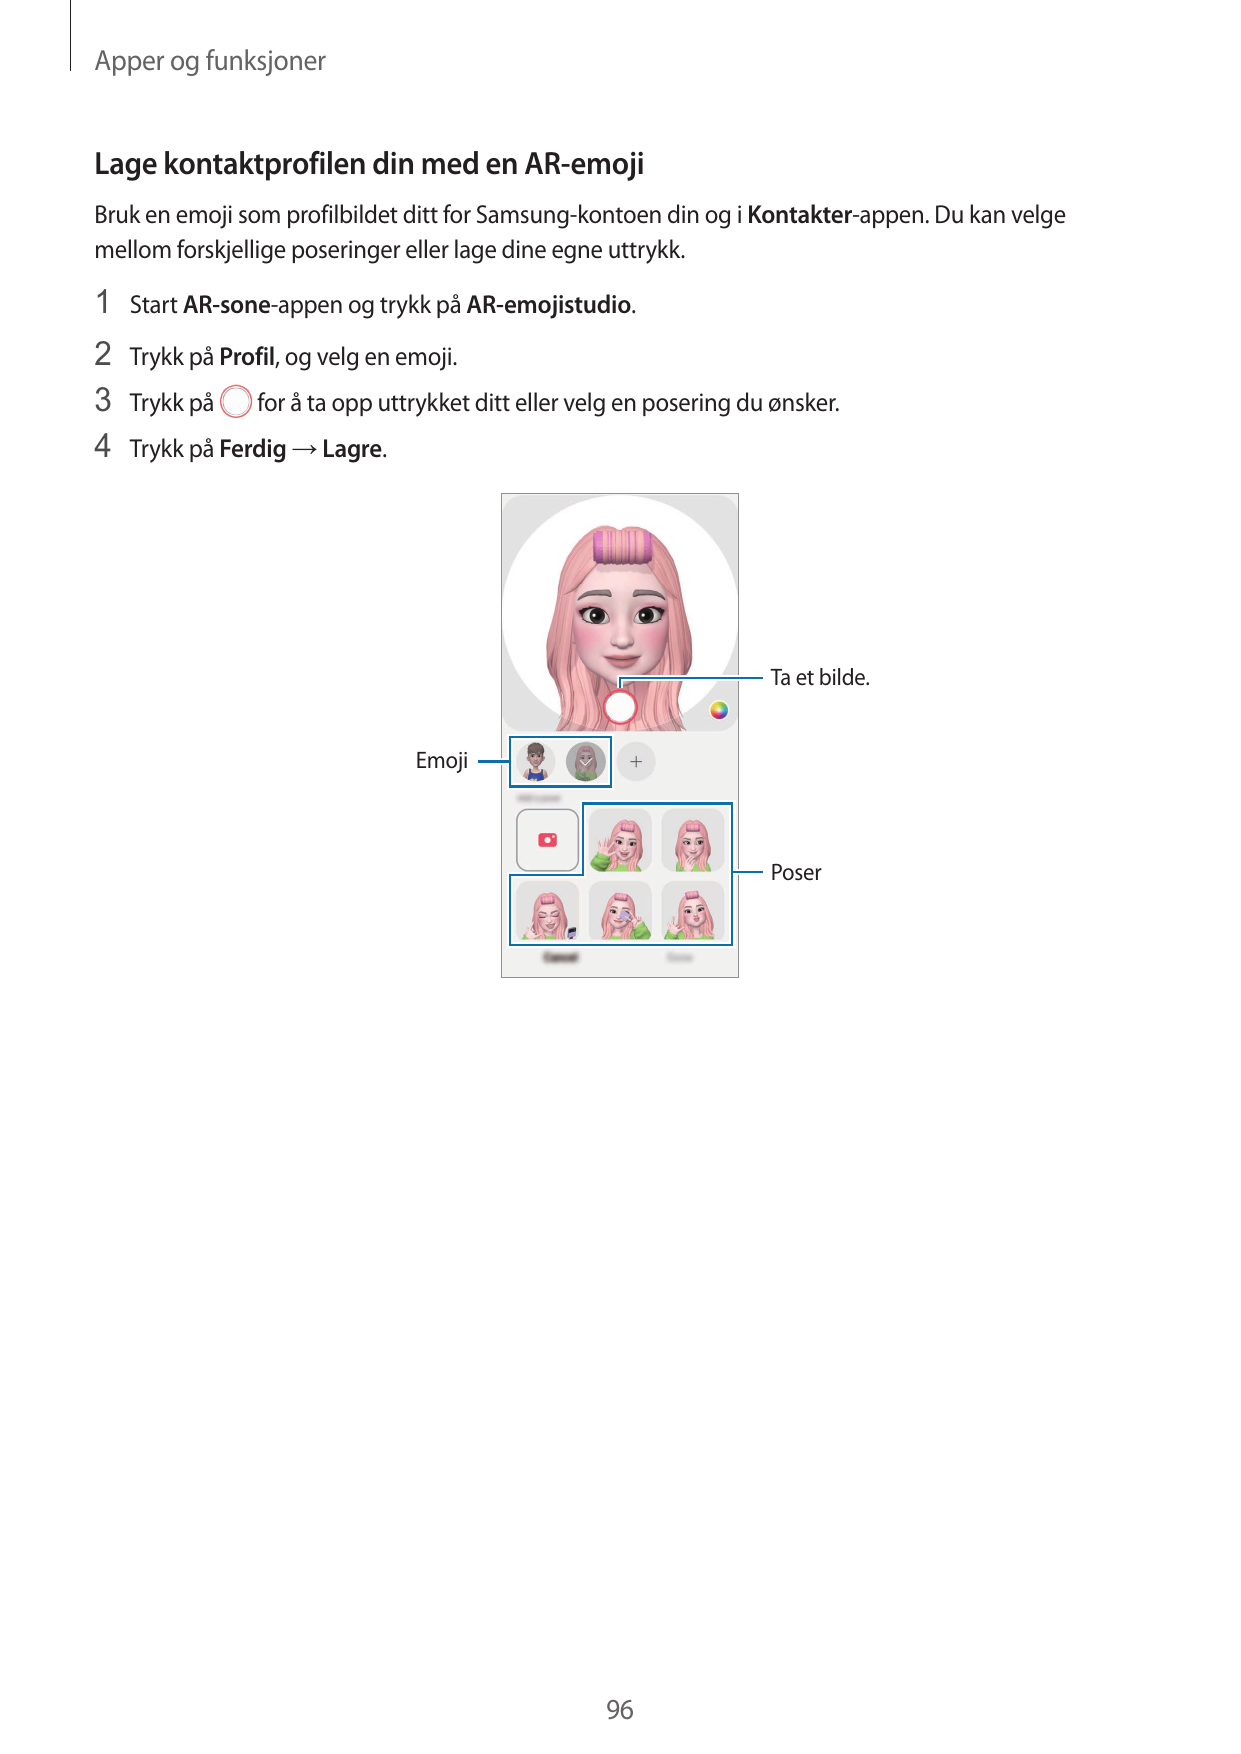 Apper og funksjonerLage kontaktprofilen din med en AR-emojiBruk en emoji som profilbildet ditt for Samsung-kontoen din og i Kont